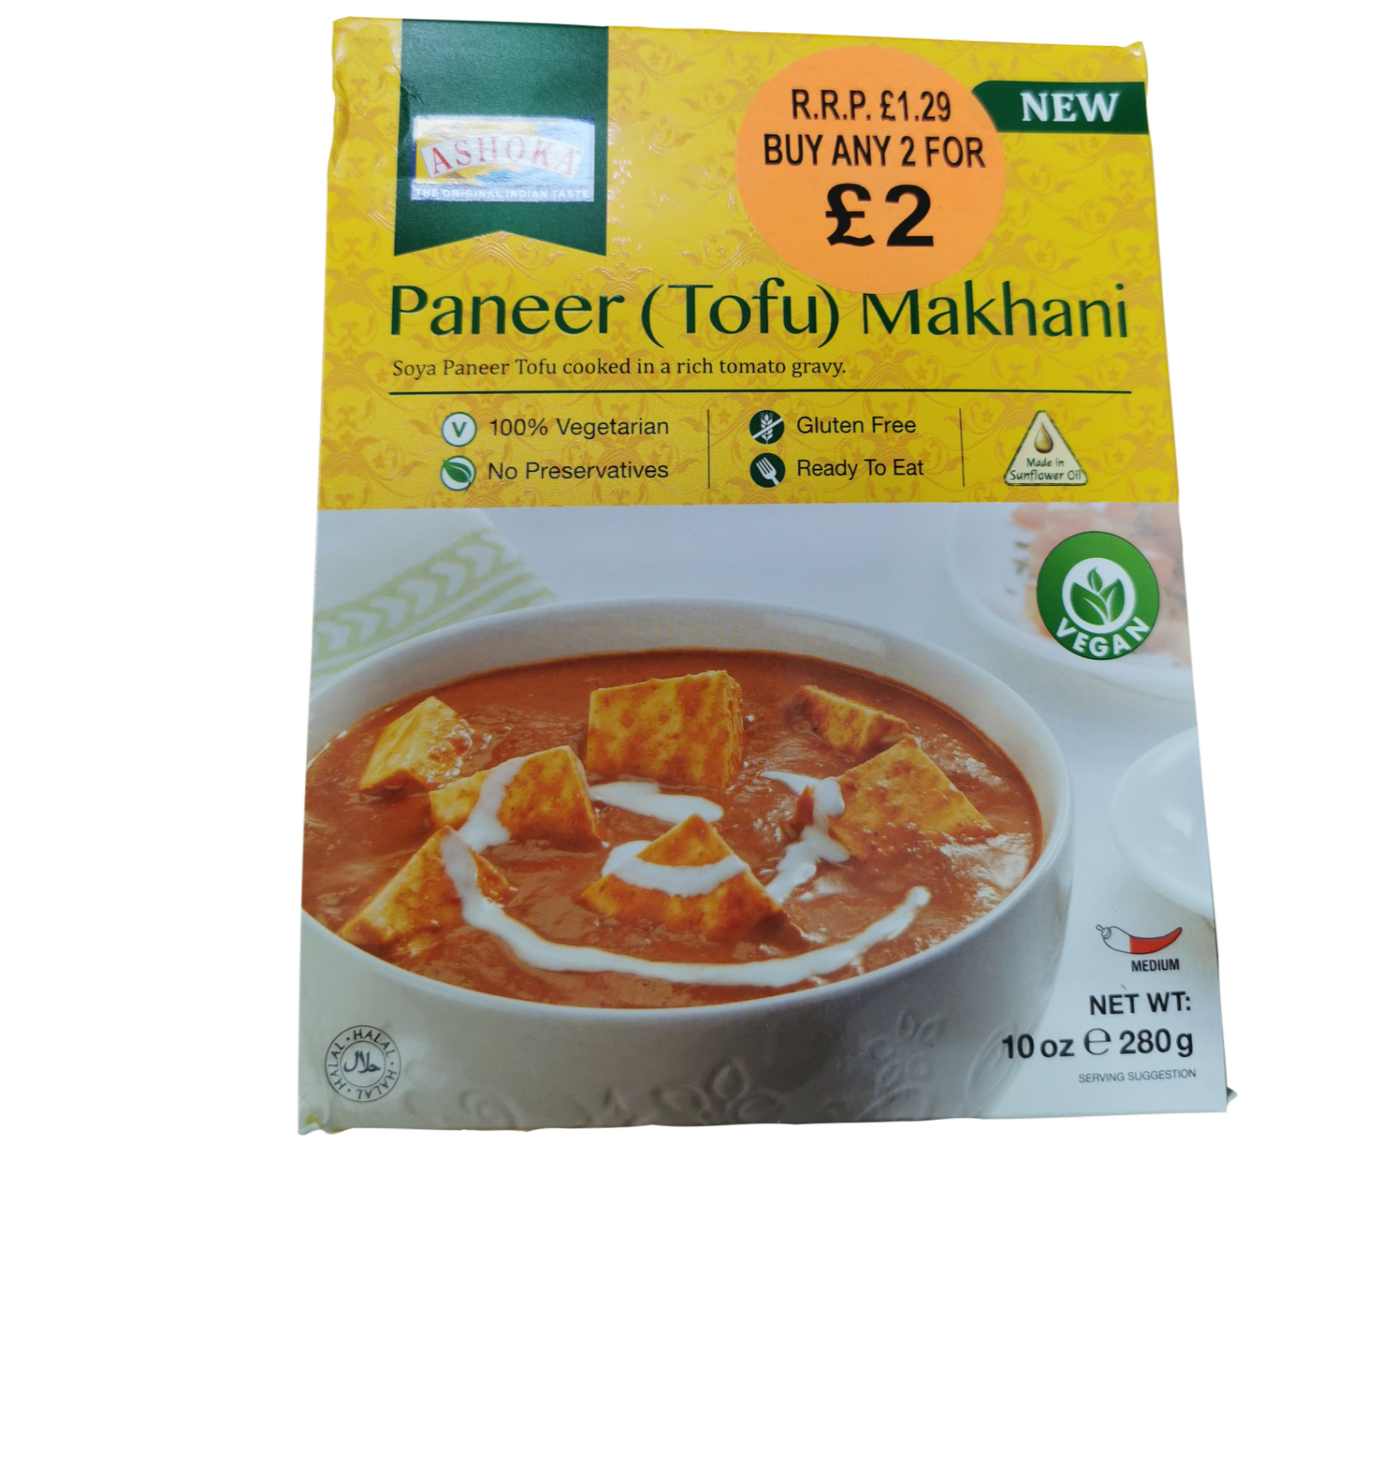 Ashoka Paneer(Tofu) Makhani (Vegan)